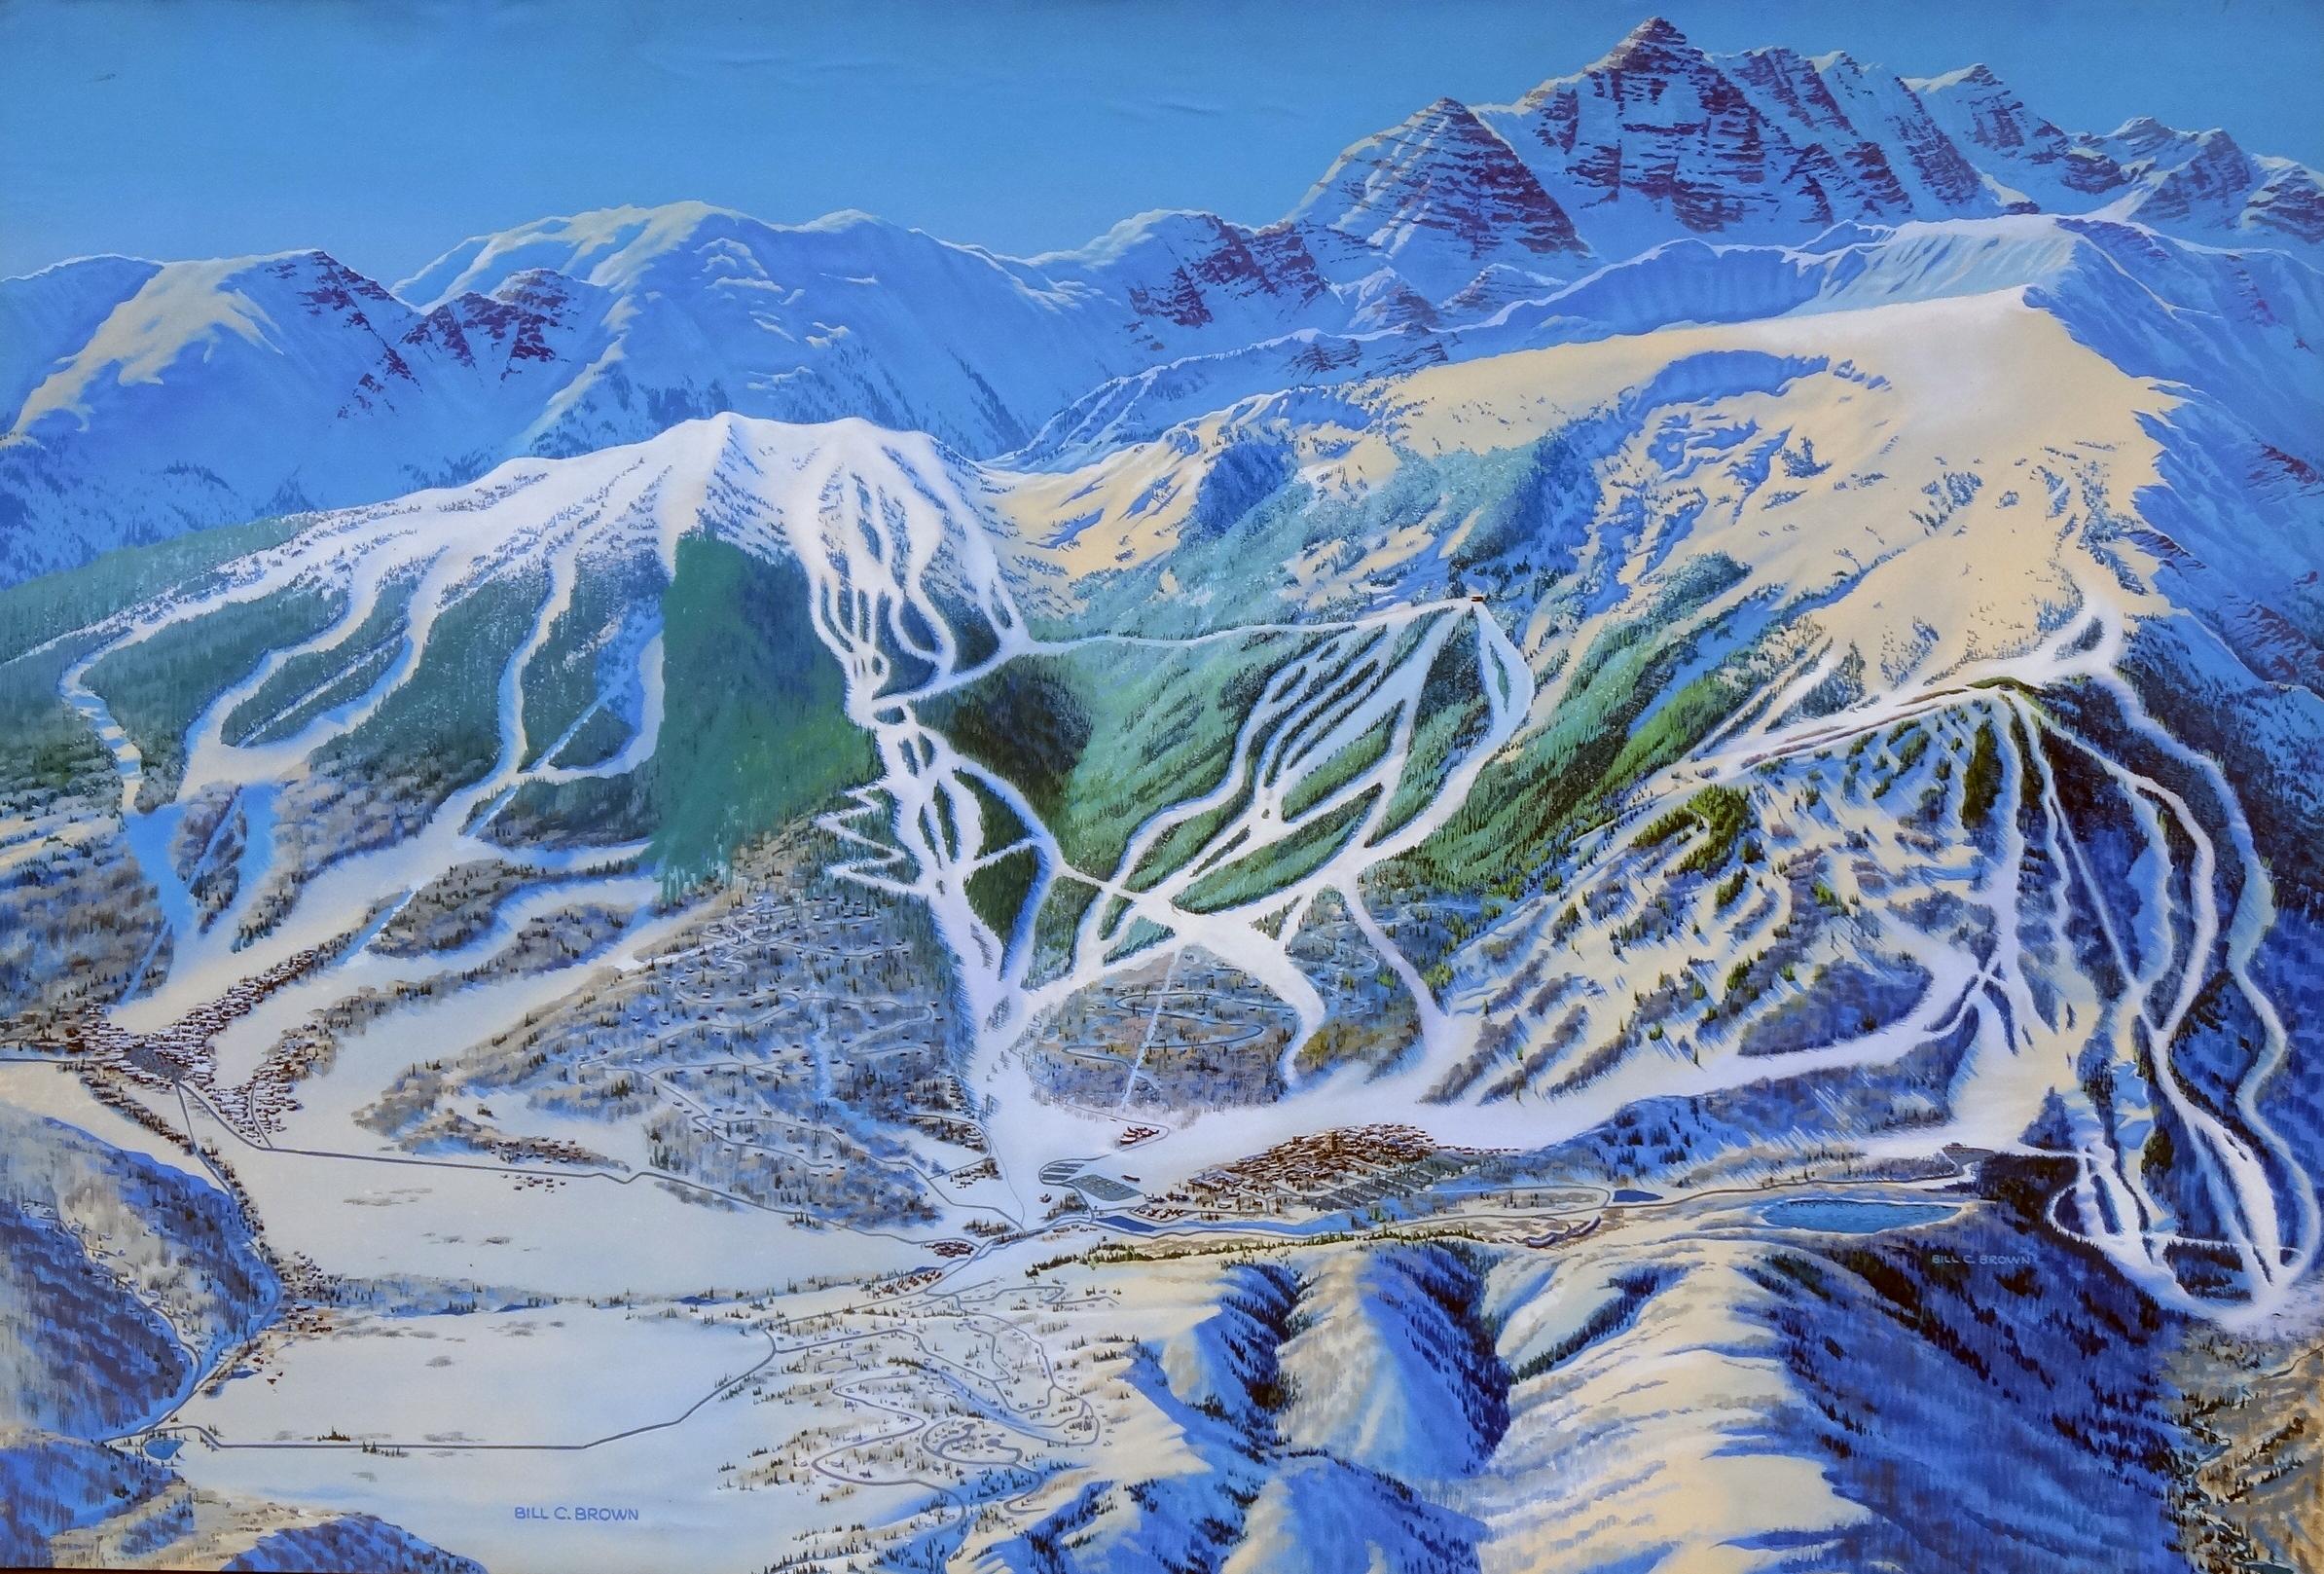 Landscape Painting Bill C. Brown - Peinture d'une carte de la monticule d'Aspen en montagne